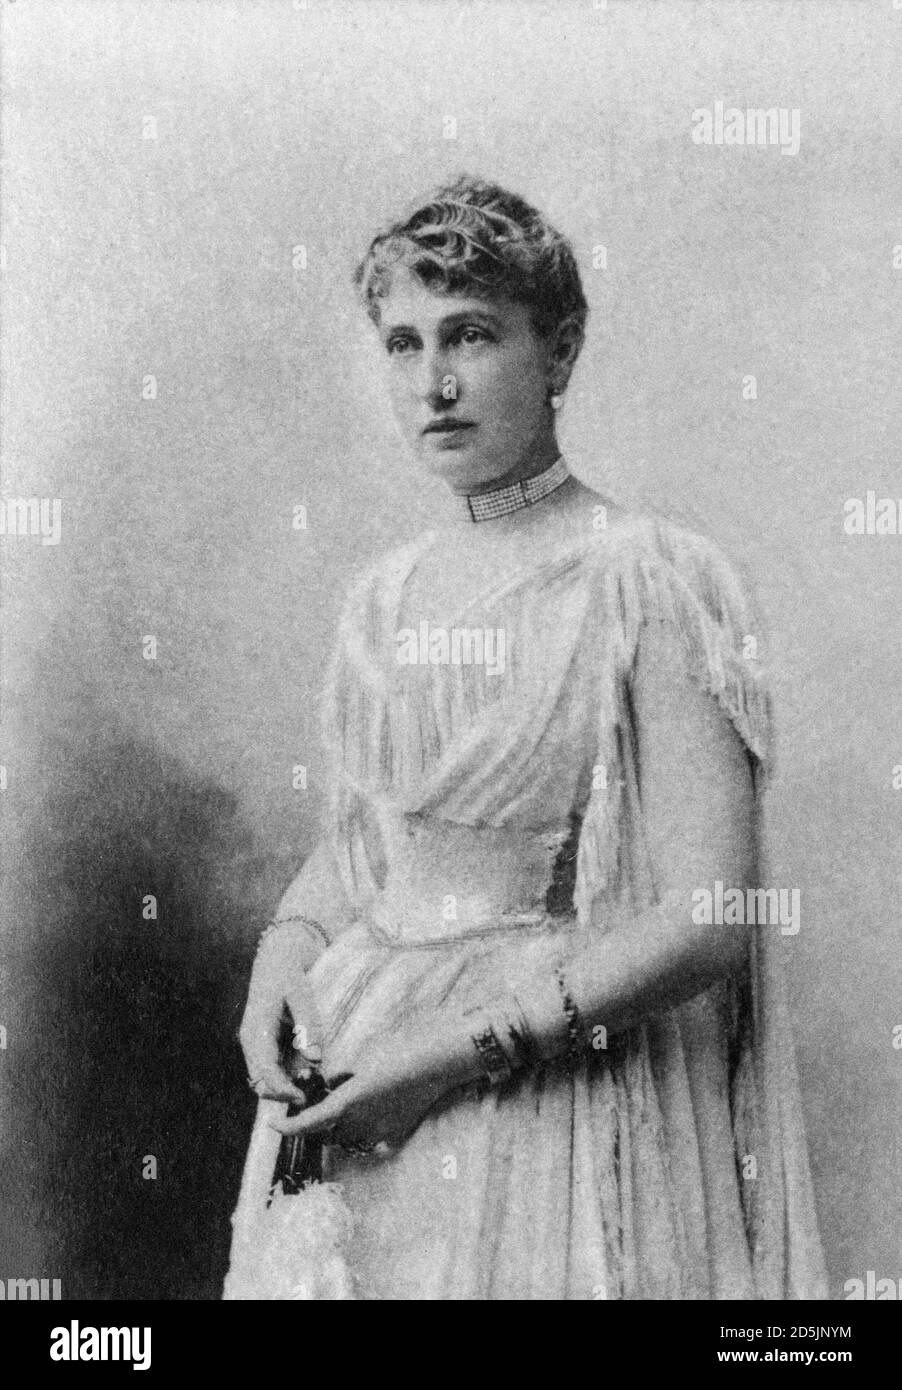 Alice Heine (1858 – 1925) fue la princesa conconsorte de Mónaco nacida en Estados Unidos por matrimonio con el príncipe Alberto I de Mónaco. Marcel Proust la usó como modelo Foto de stock